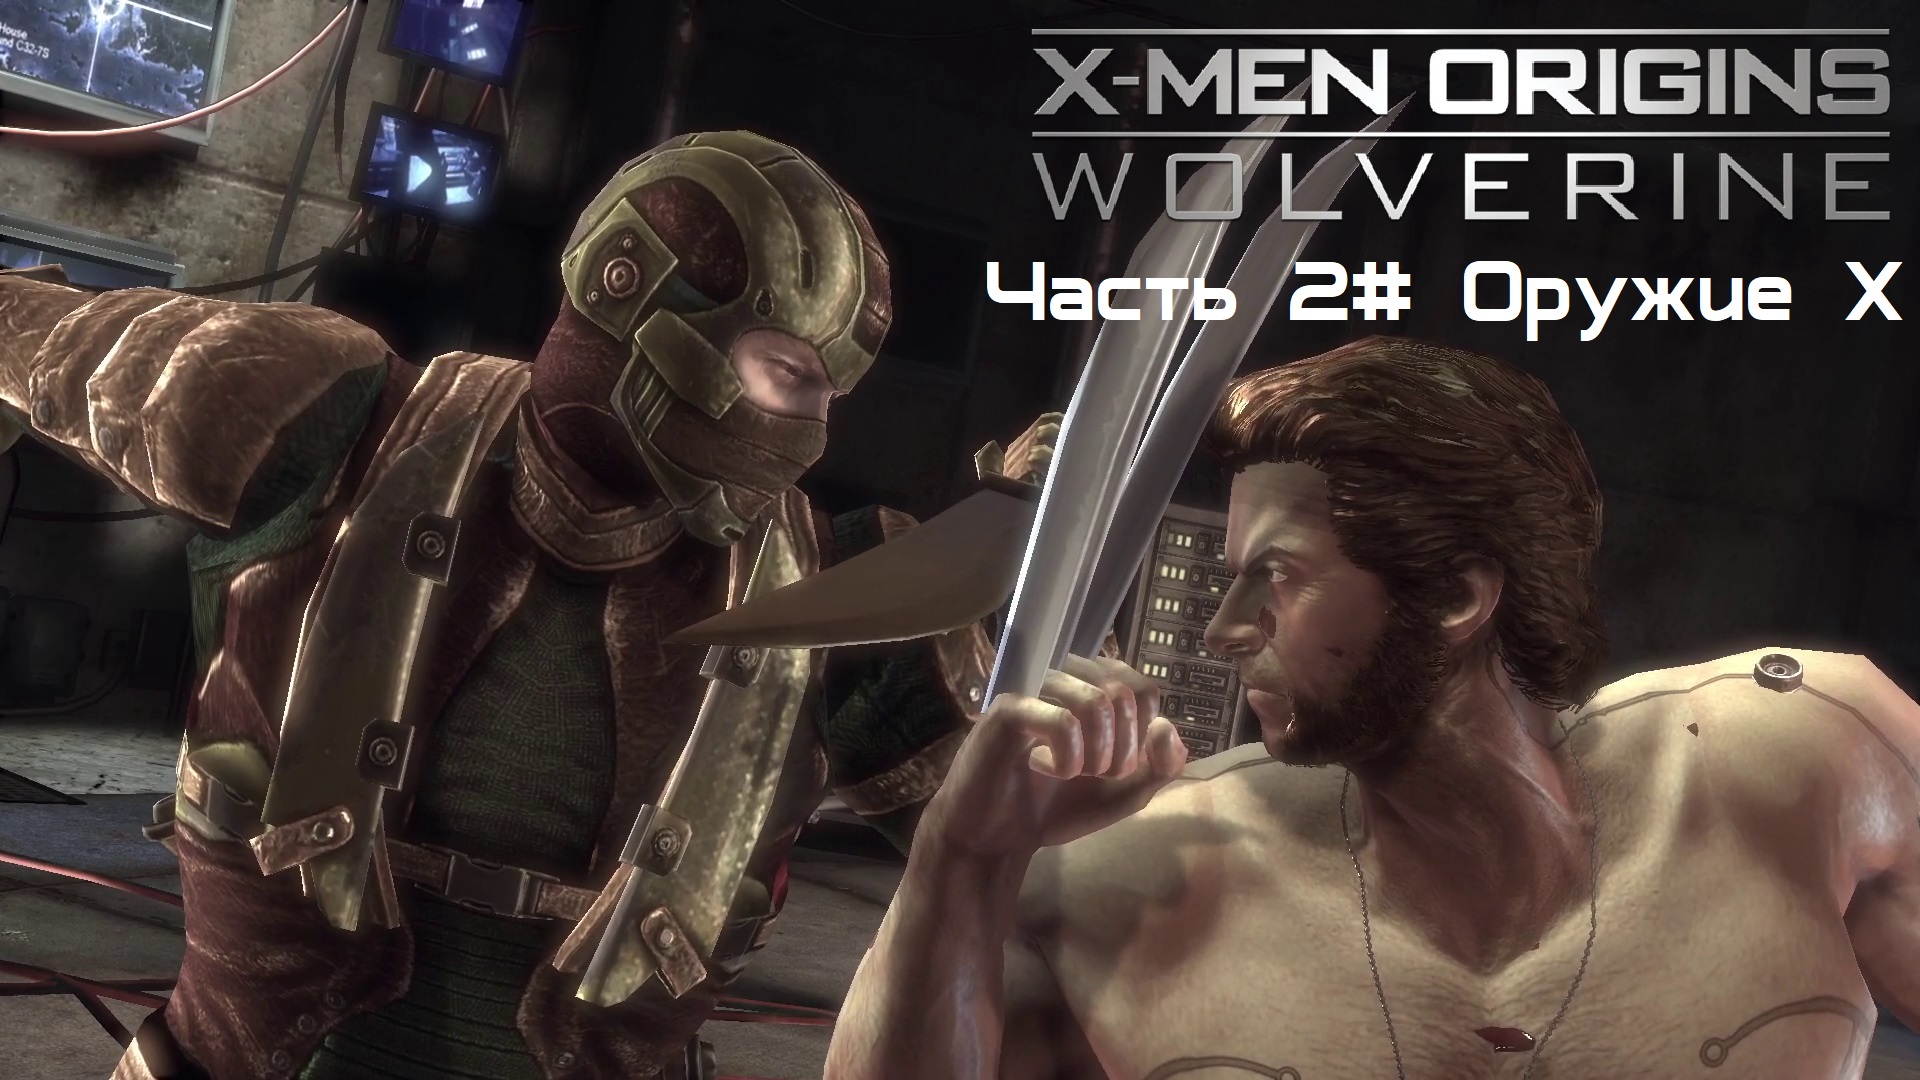 Прохождение X-Men Origins: - Wolverine Часть 2# Оружие X (1080p 60fps)